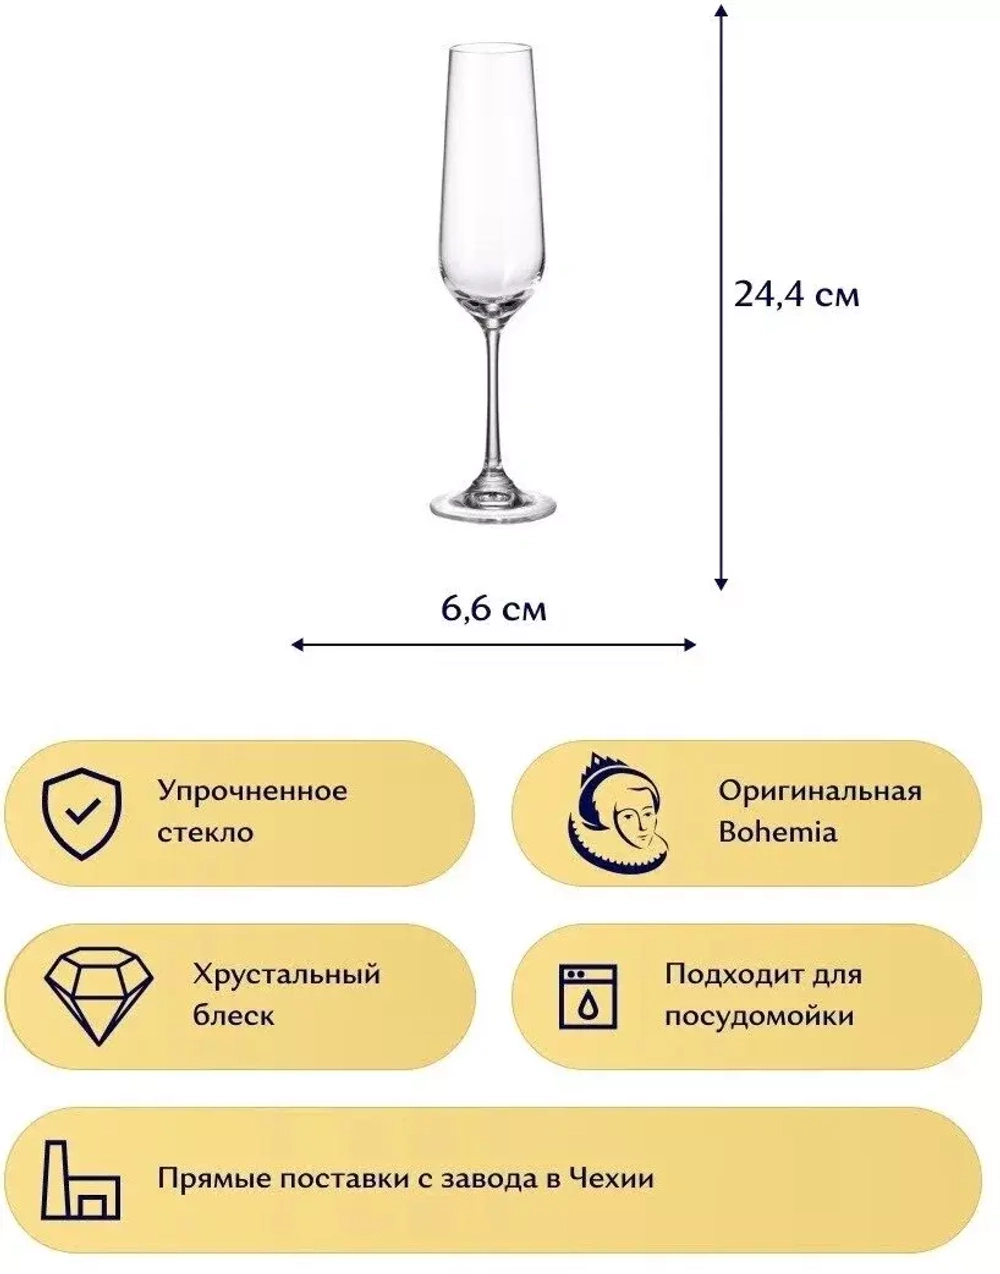 Набор фужеров ДОРА СТРИКС для шампанского, 200 мл